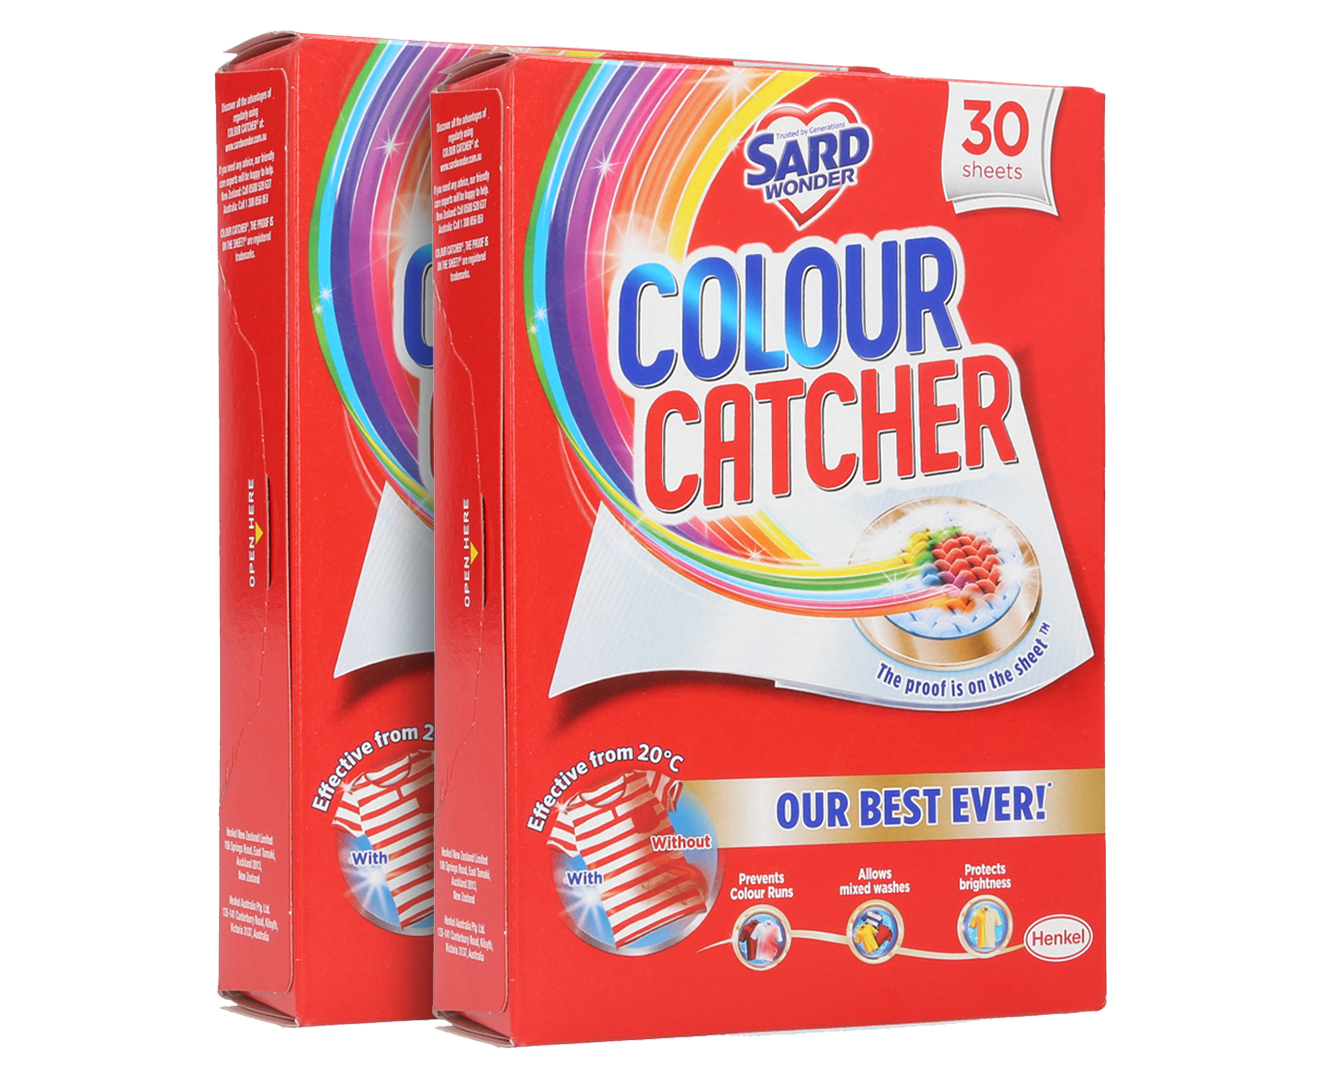 2-x-sard-wonder-colour-catcher-sheets-30pk-catch-au